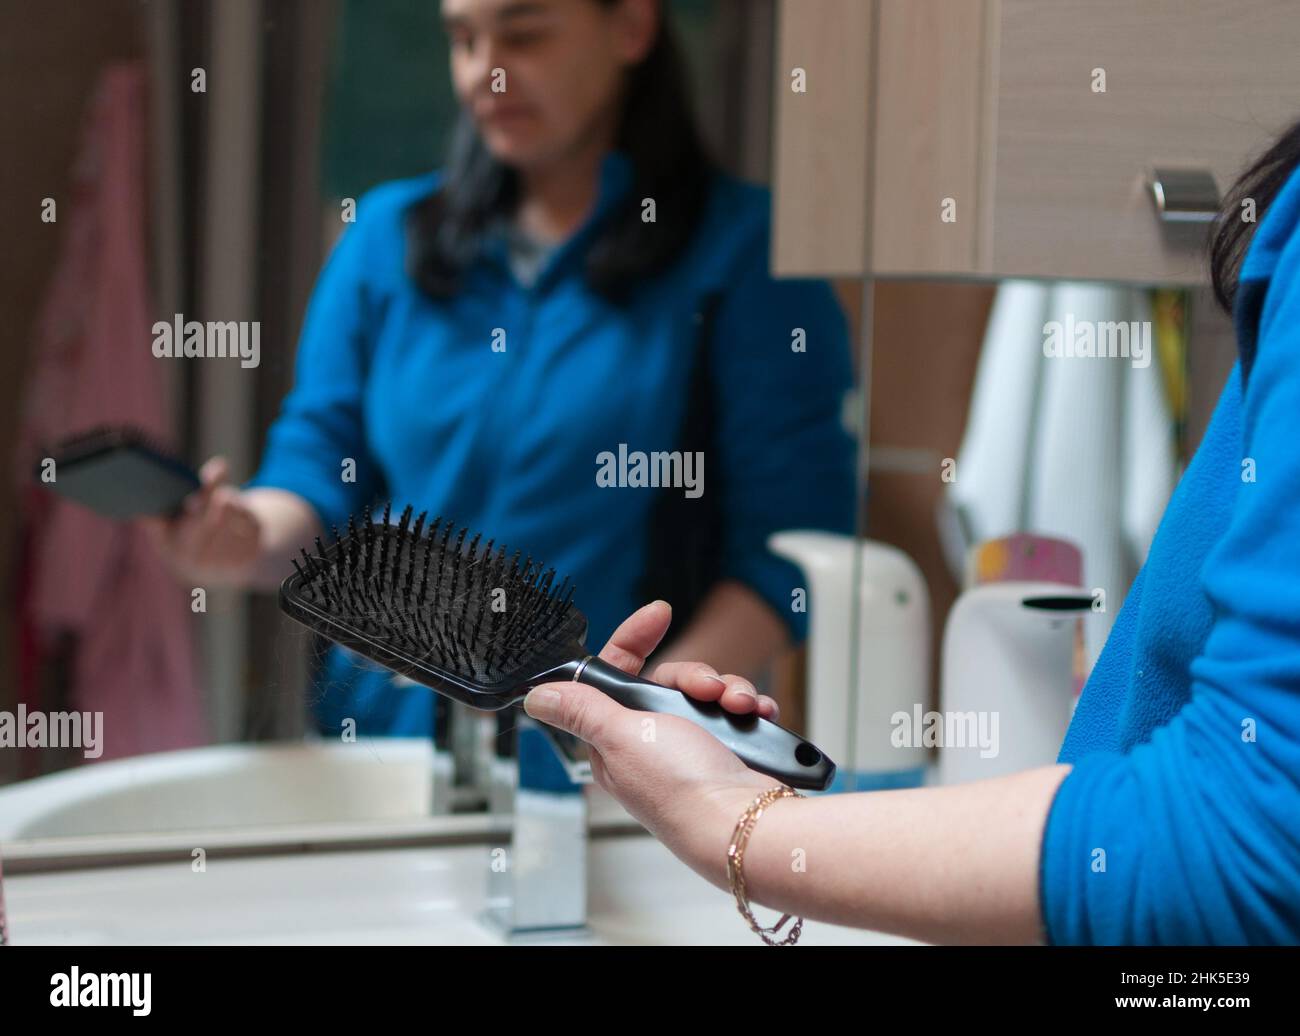 la donna guarda la spazzola con i capelli perduti su di essa. la spazzola in primo piano, la donna sfocata sullo sfondo Foto Stock